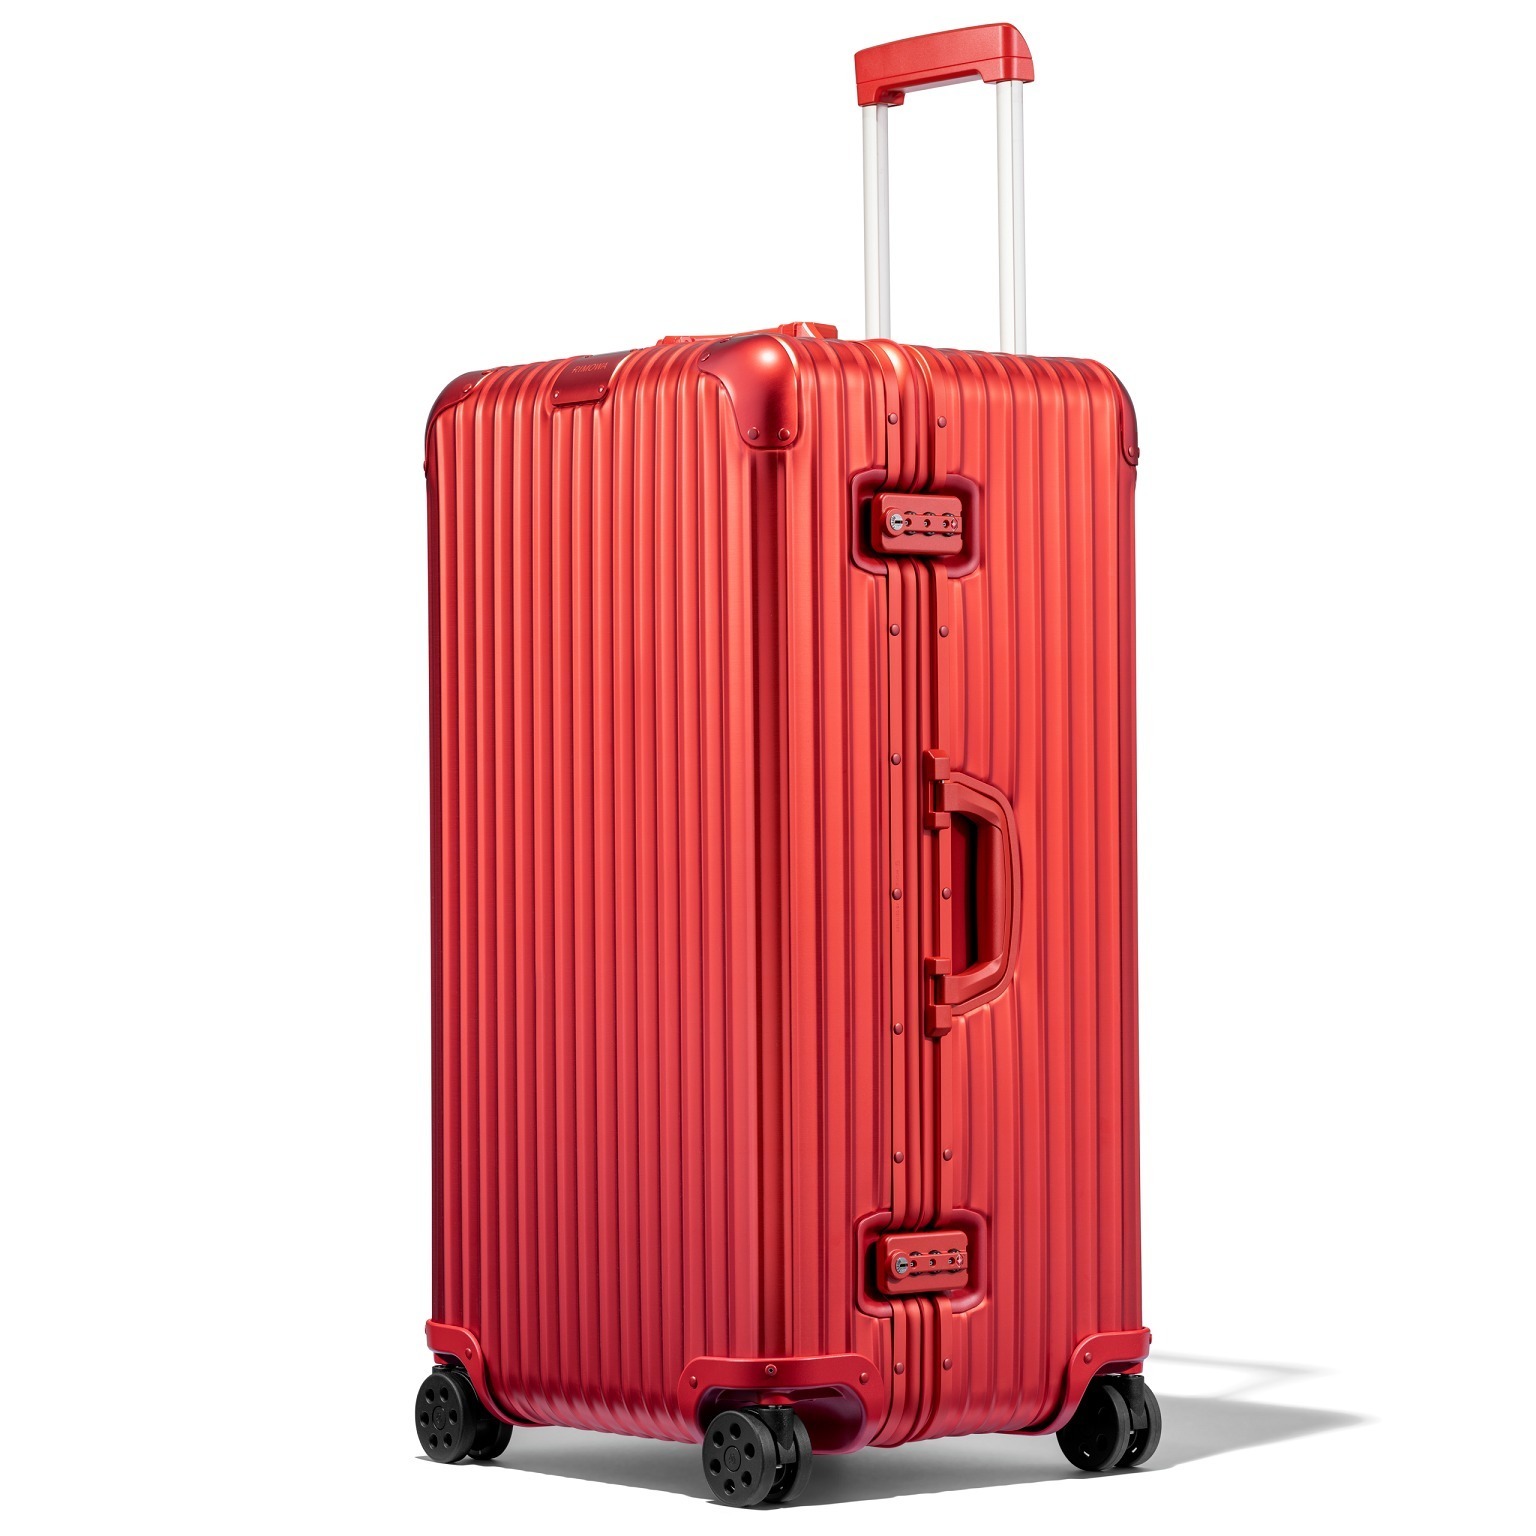 リモワのアルミ合金スーツケース「オリジナル」に新色、ショウジョ